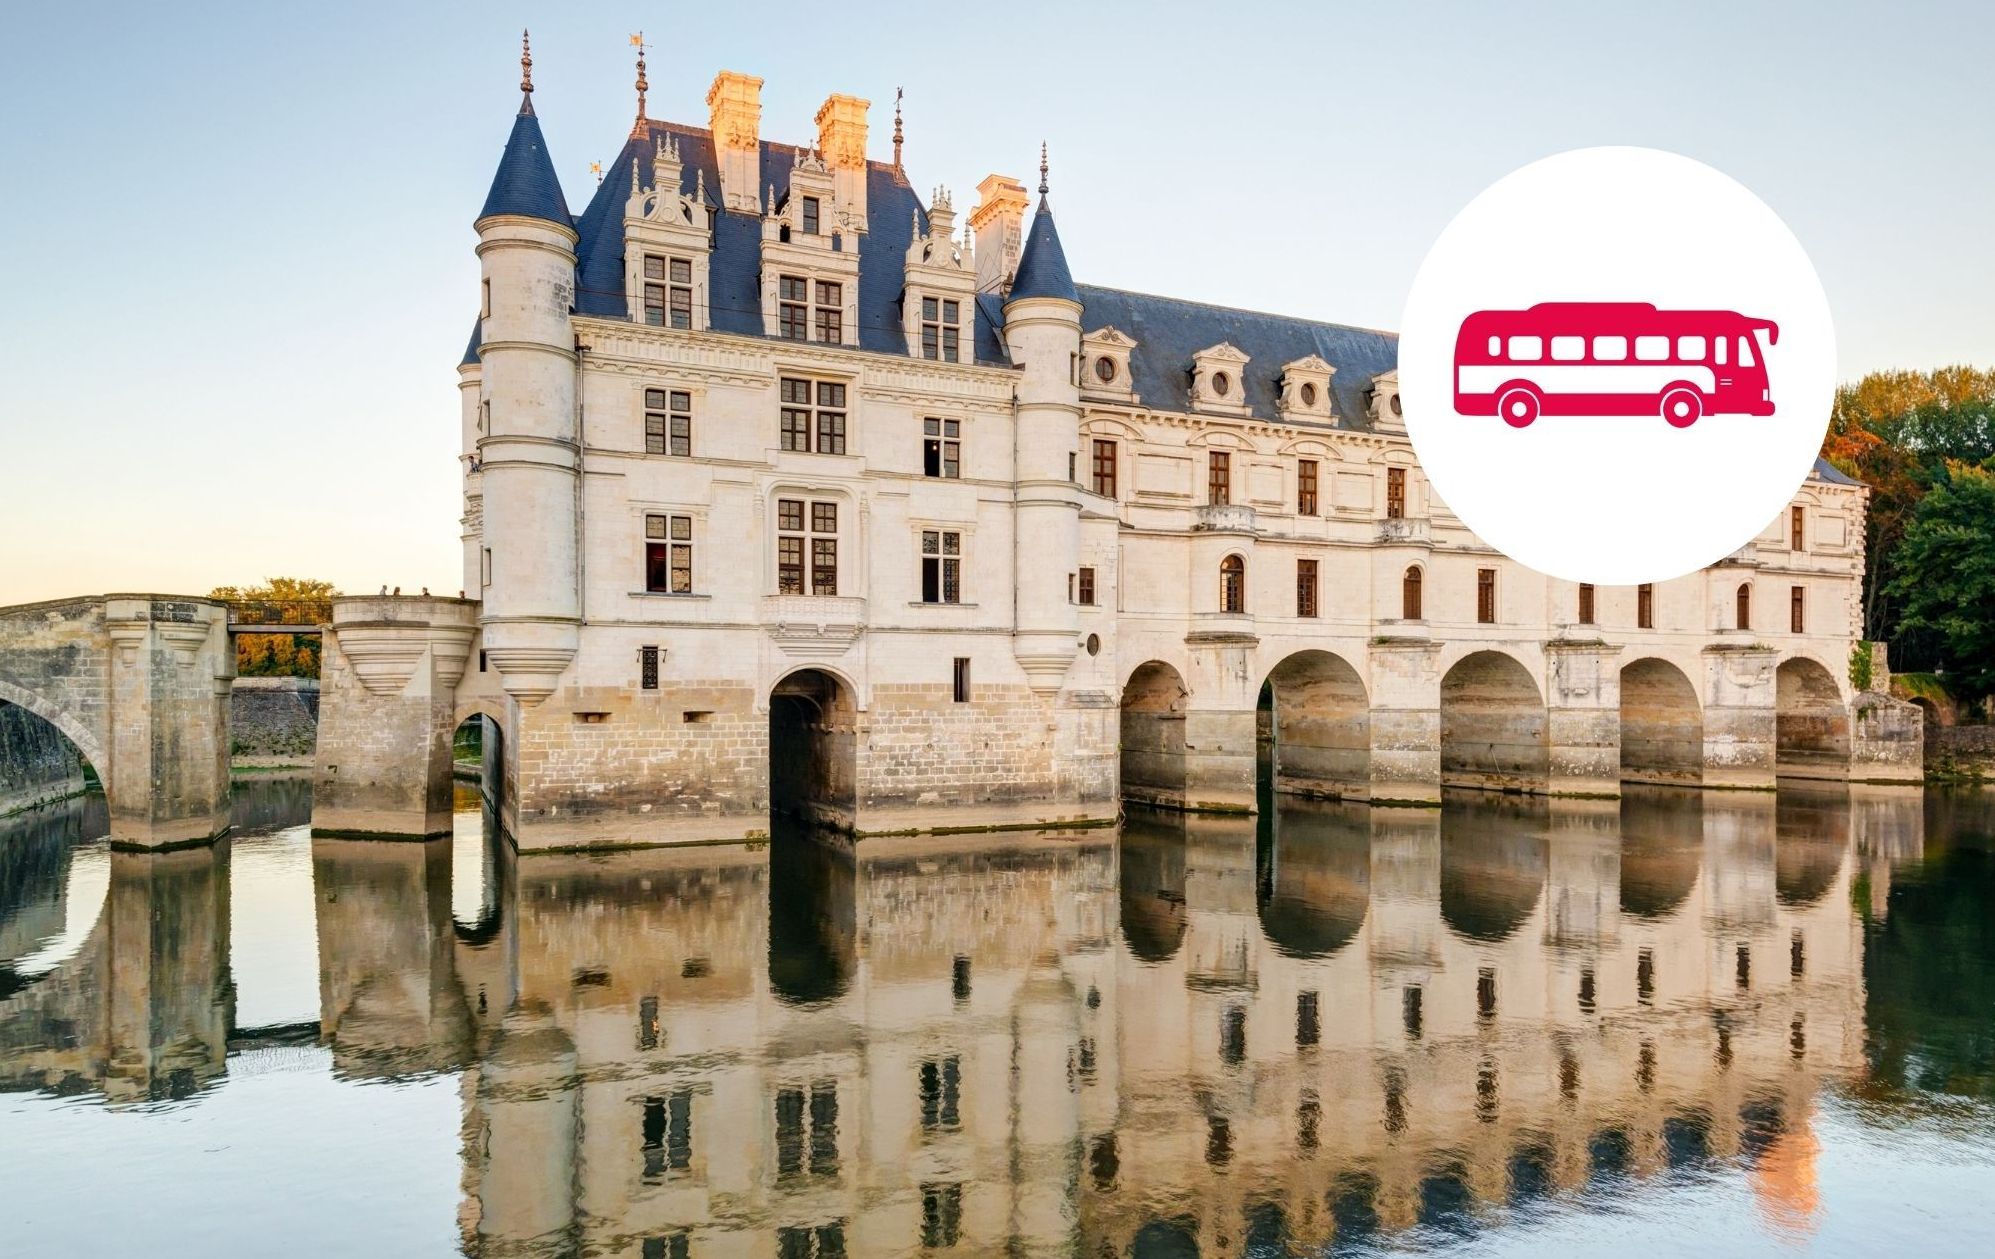 Visita guiada de um dia aos castelos do Vale do Loire a partir de Paris com transporte